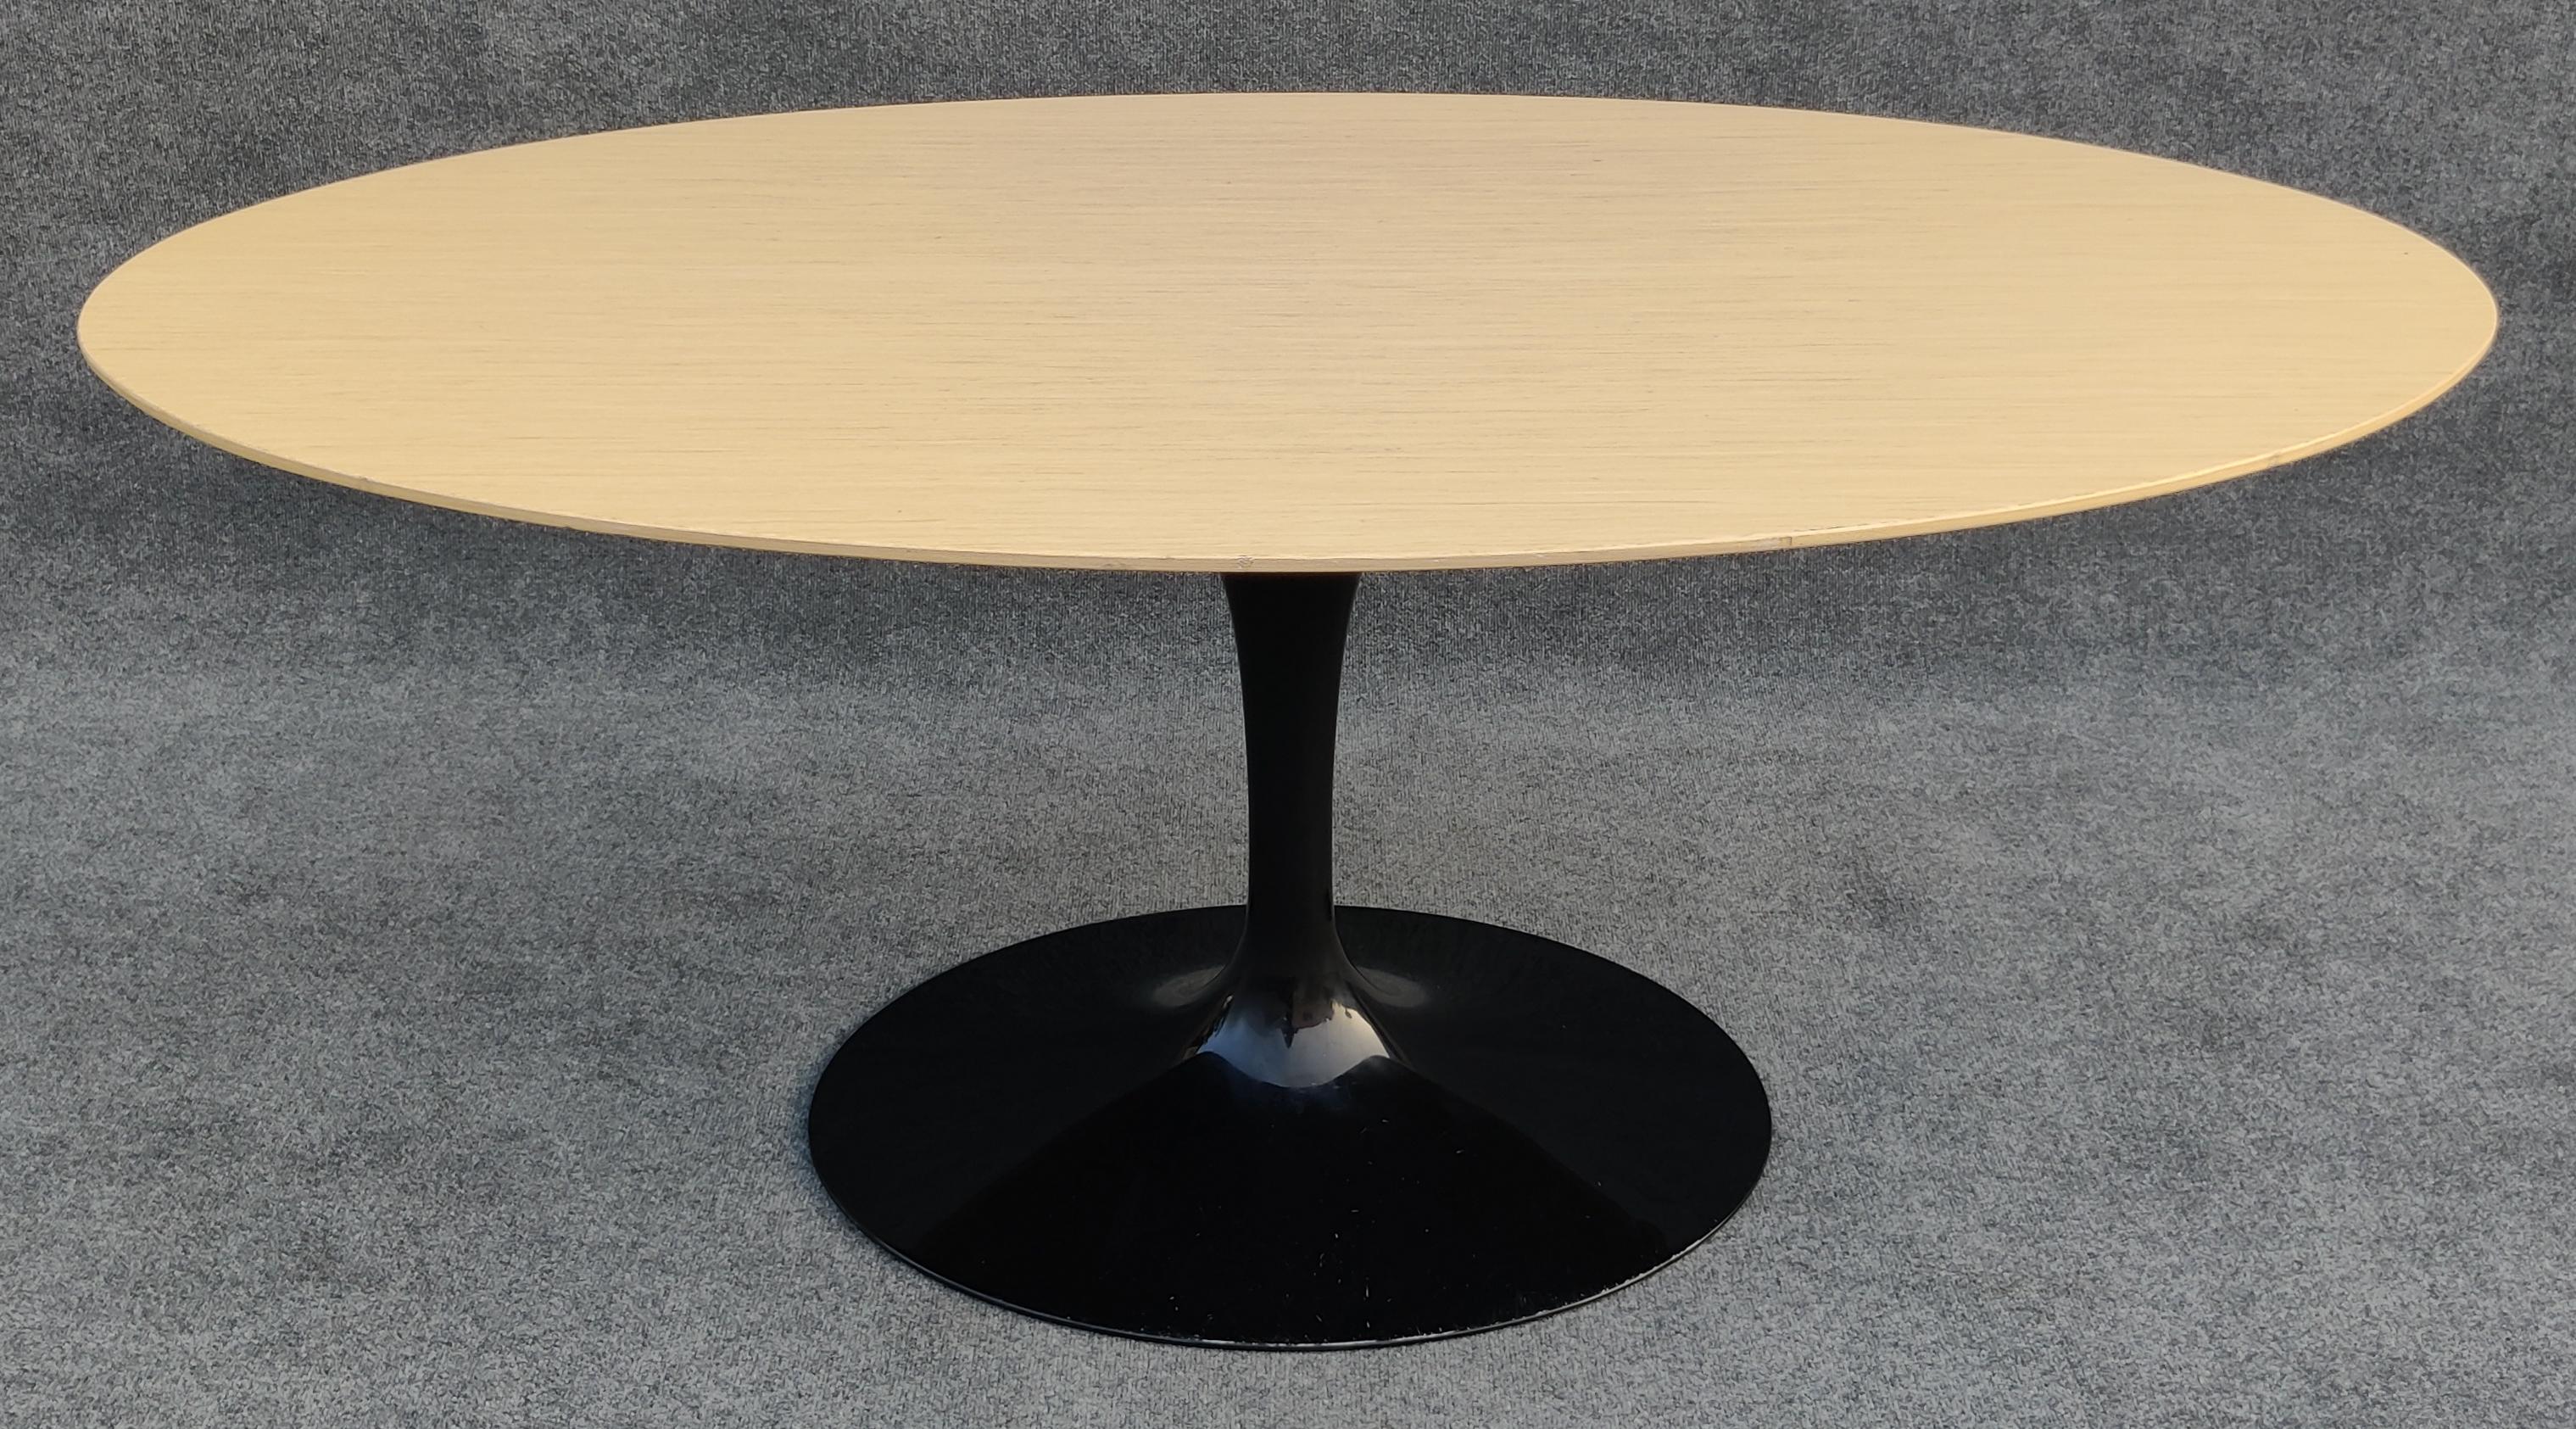 Signierter und datierter Eero Saarinen für Knoll ovaler Tulip-Esstisch aus blondem Holz mit ovalem kunststoffbeschichtetem Aluminiumgussfuß. Dieser Tisch hat eine ungewöhnliche Größe, die wahrscheinlich eine Sonderbestellung war. Er hat genau die